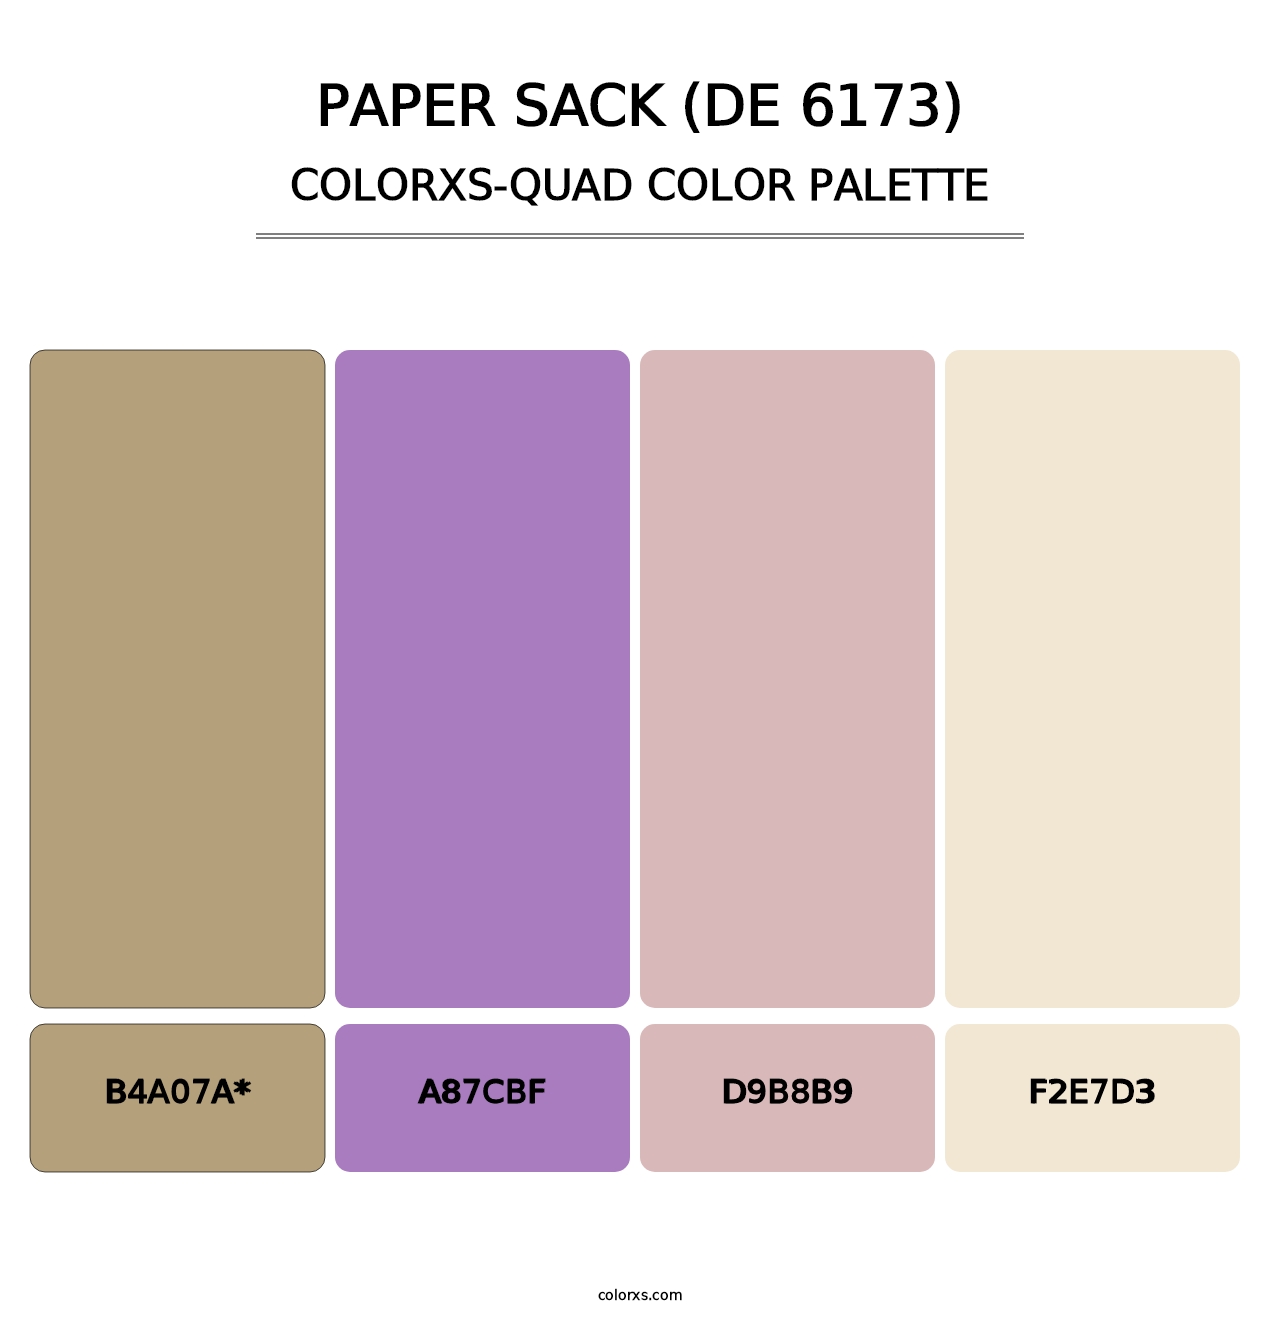 Paper Sack (DE 6173) - Colorxs Quad Palette